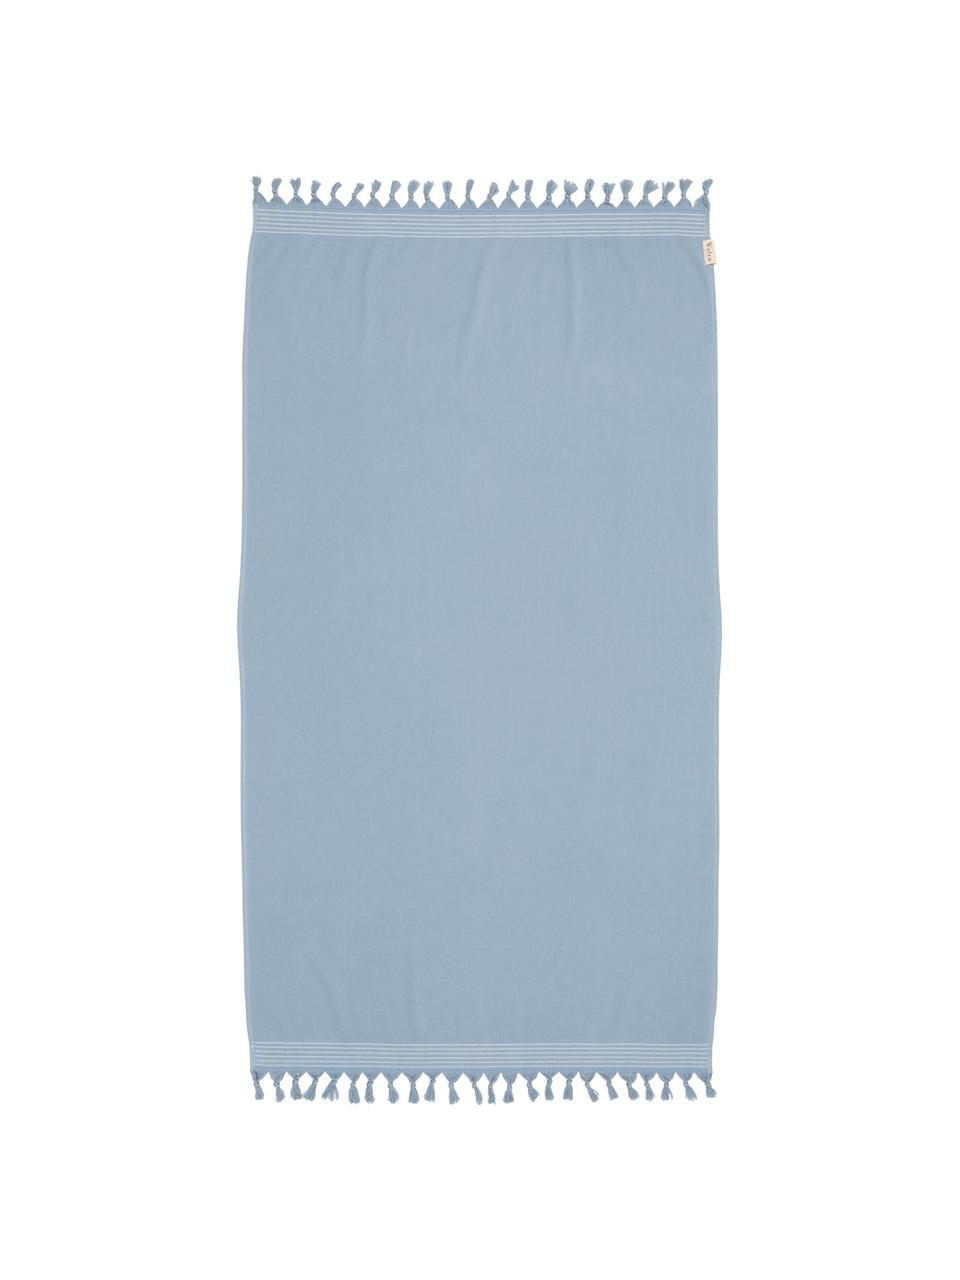 Hamamtuch Soft Cotton mit Frottee-Rückseite, Rückseite: Frottee, Blau, Weiß, 100 x 180 cm